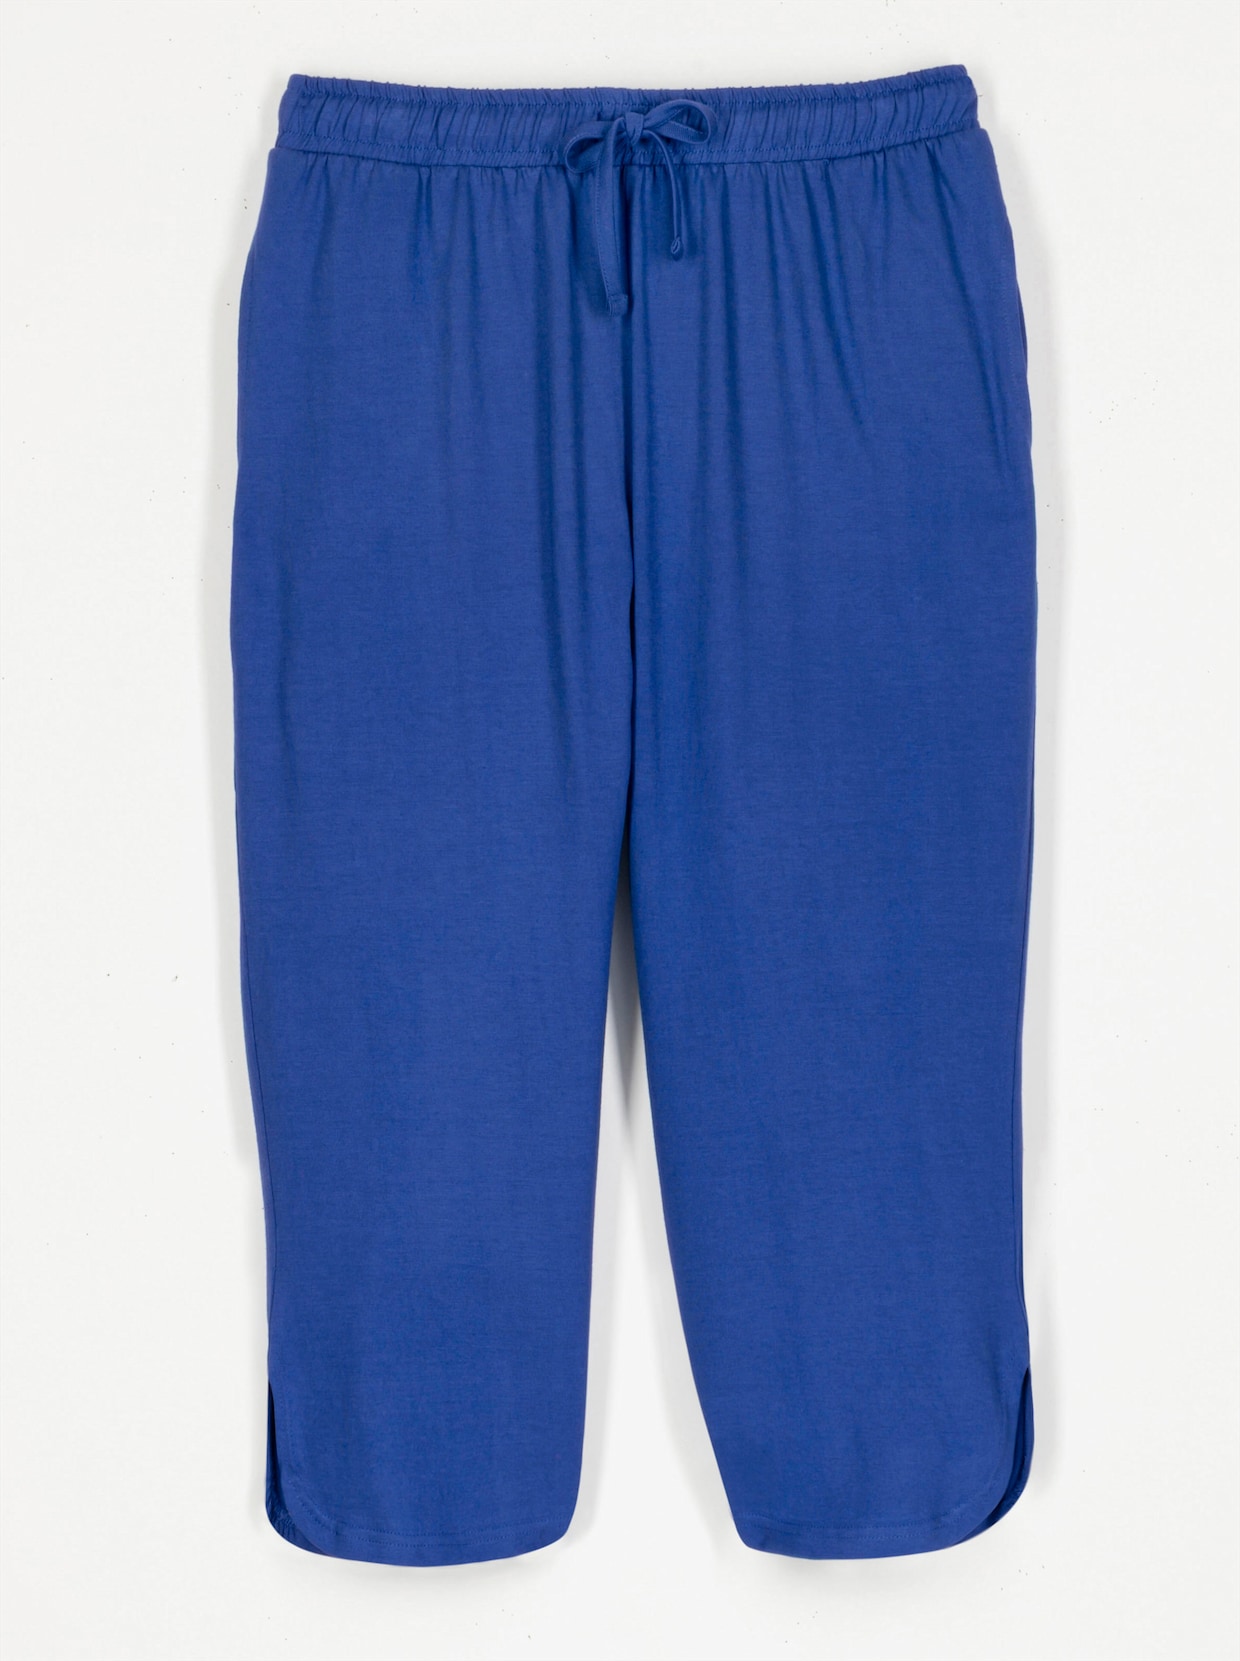 Capri kalhoty pro volný čas - královská modrá